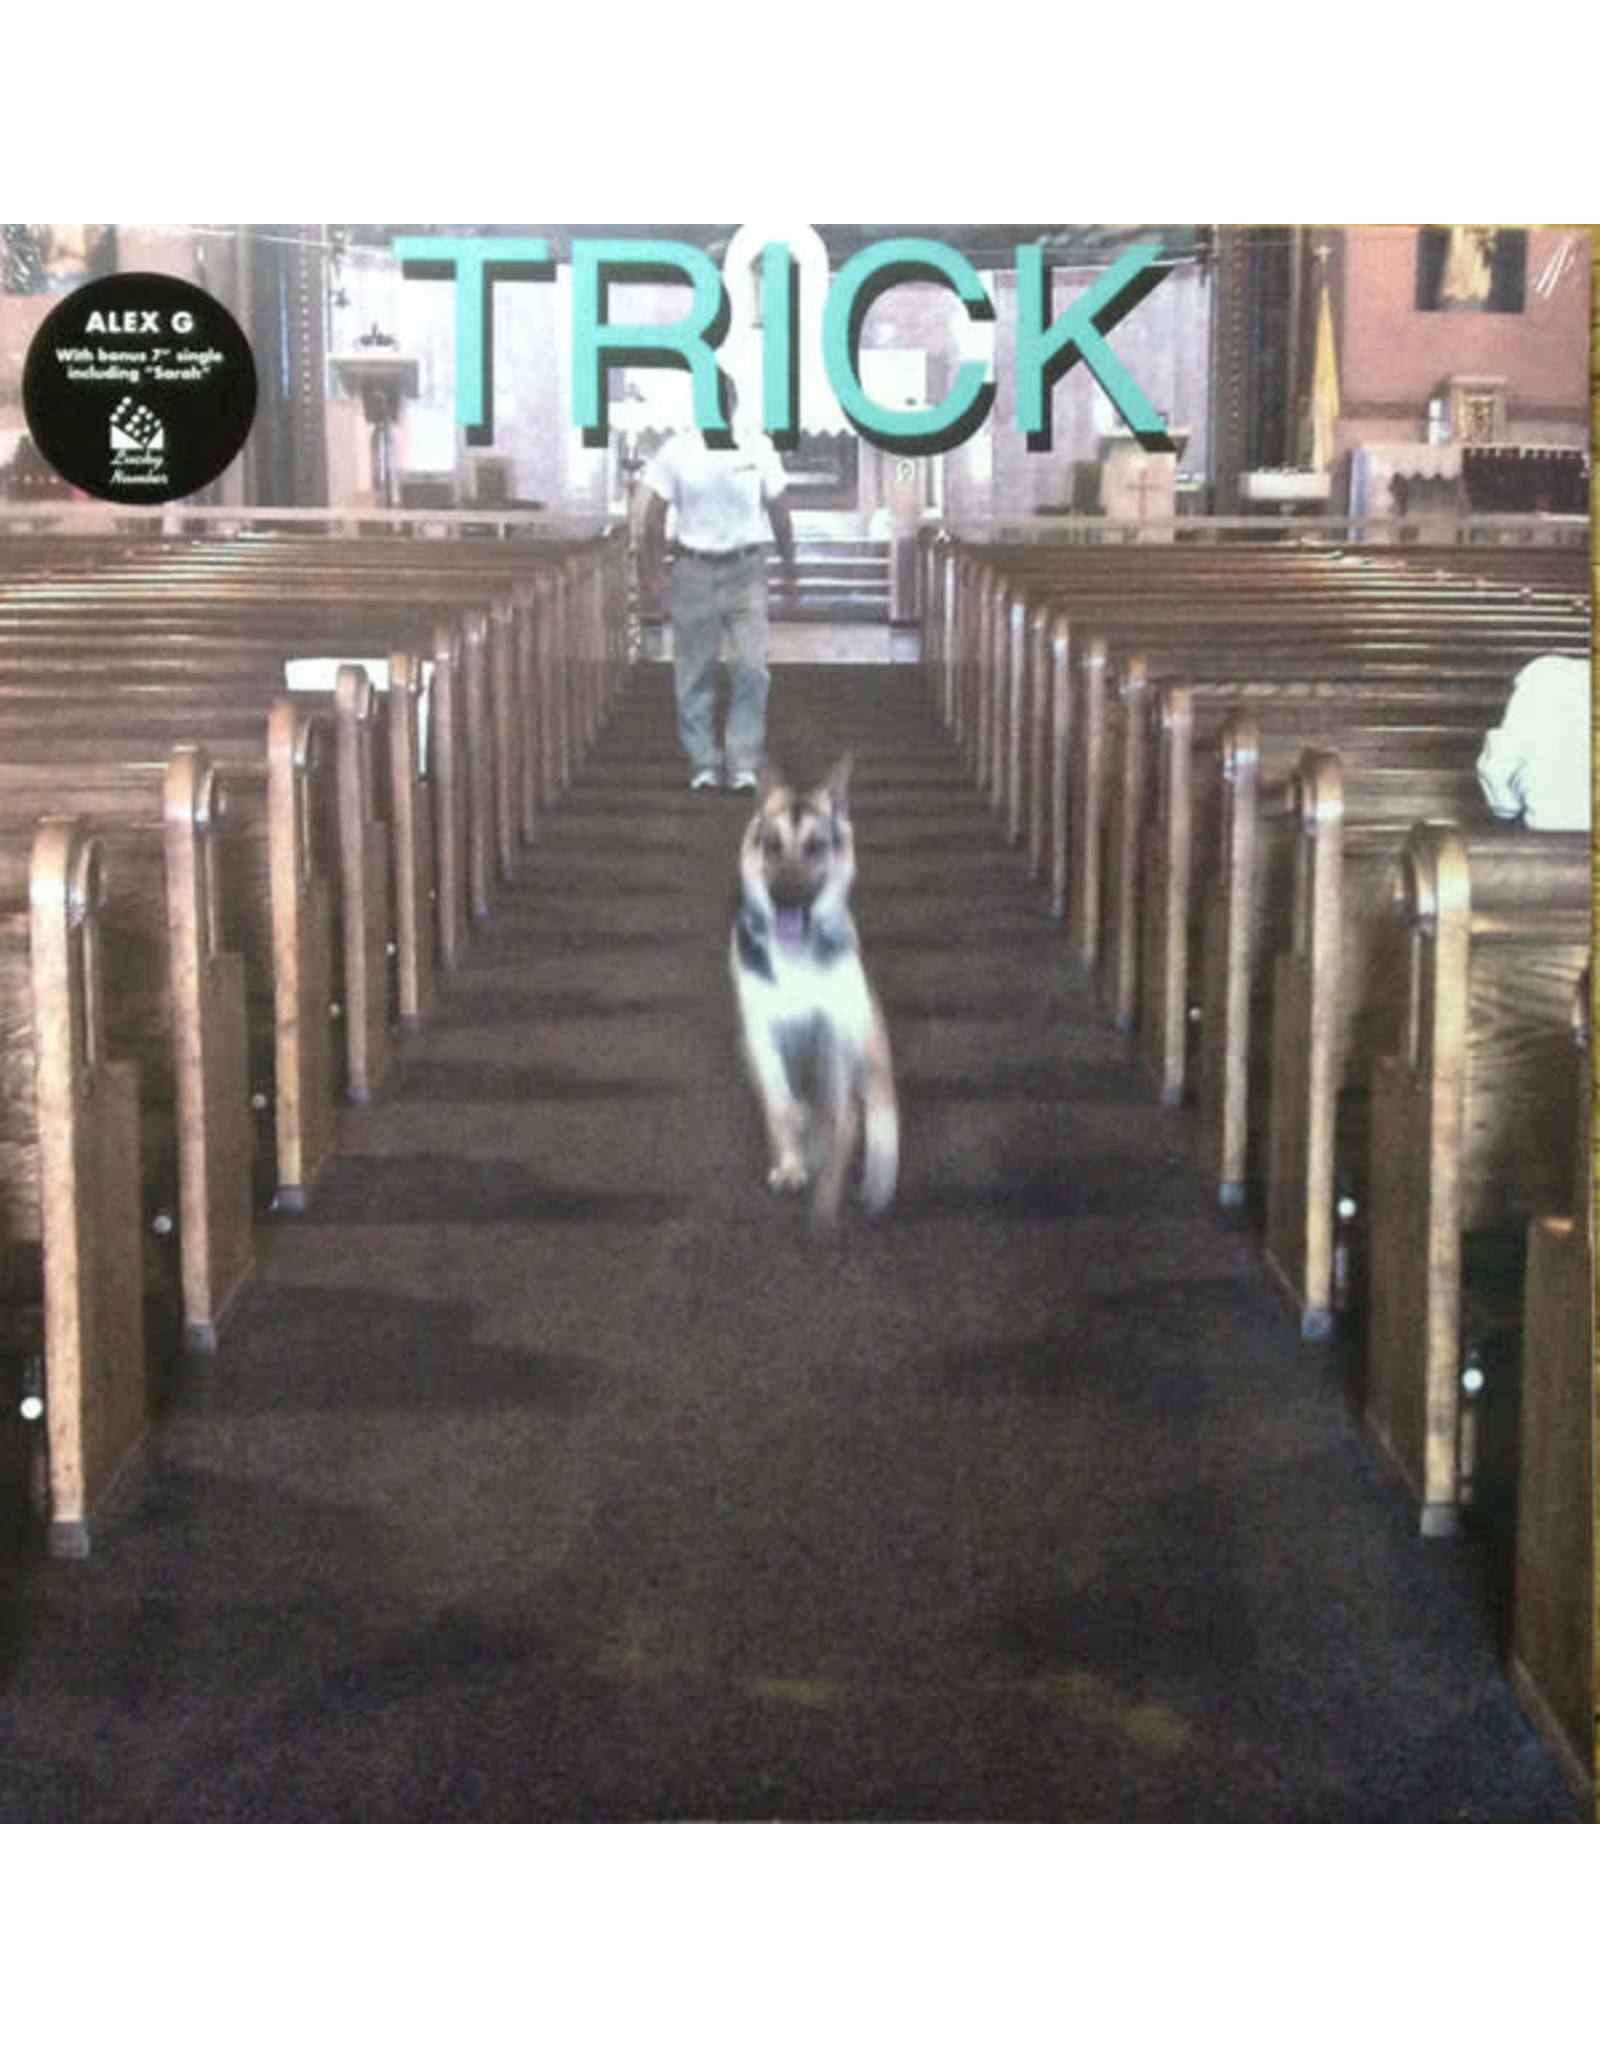 Alex G - Trick (Exclusive Deluxe Vinyl)